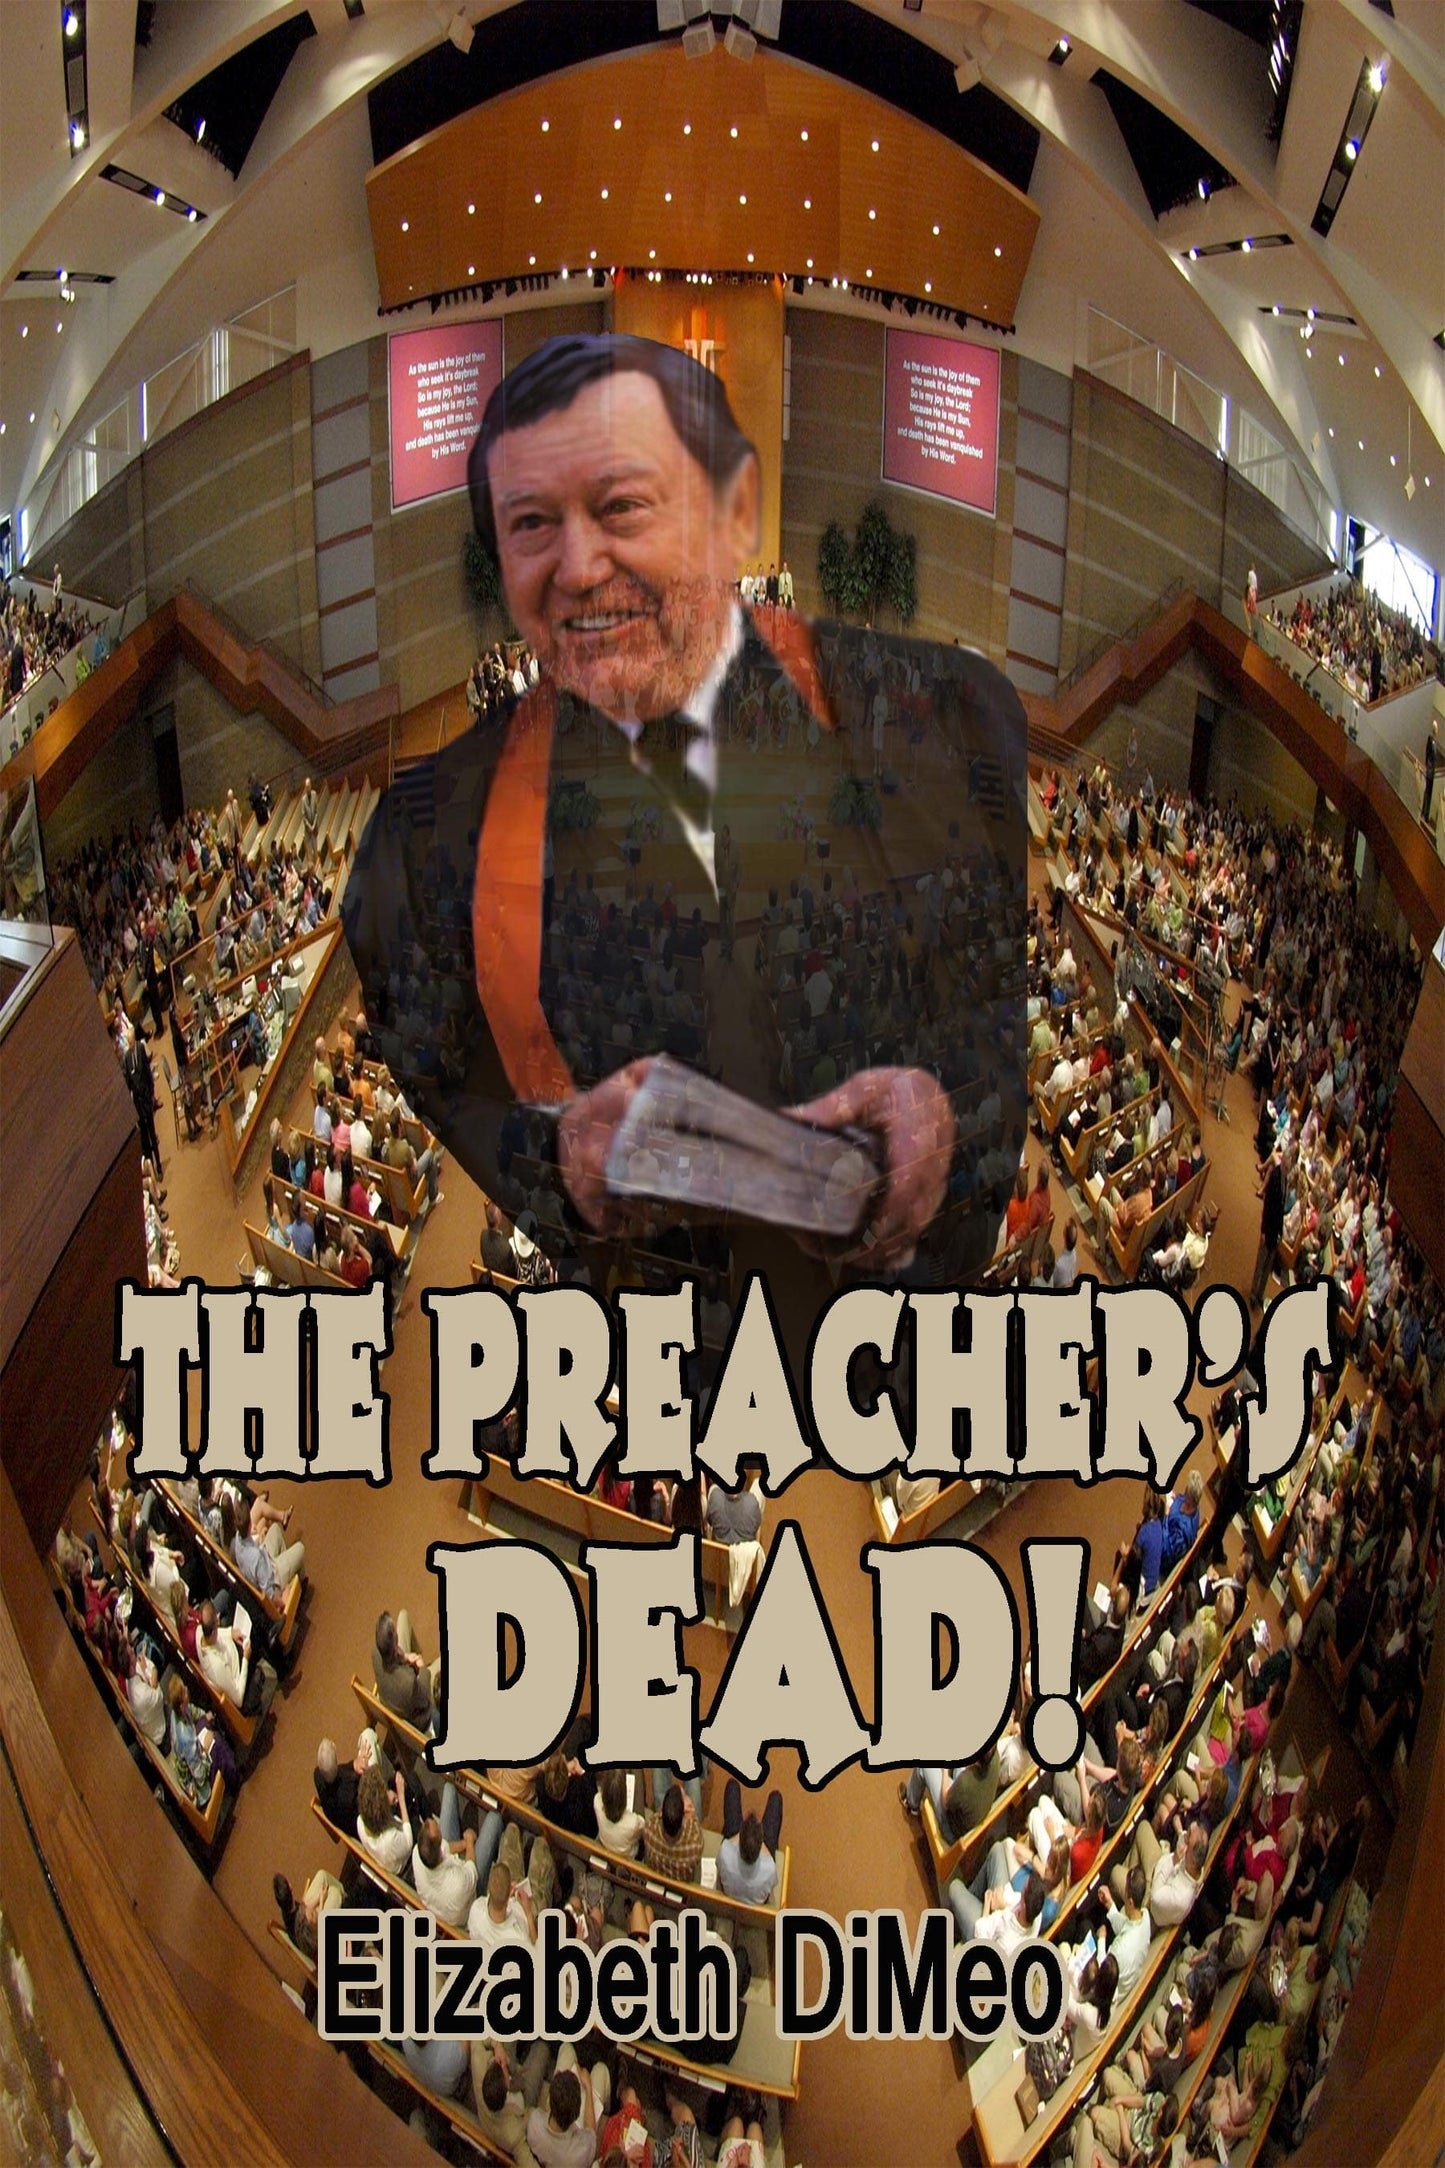 The Preacher's Dead!